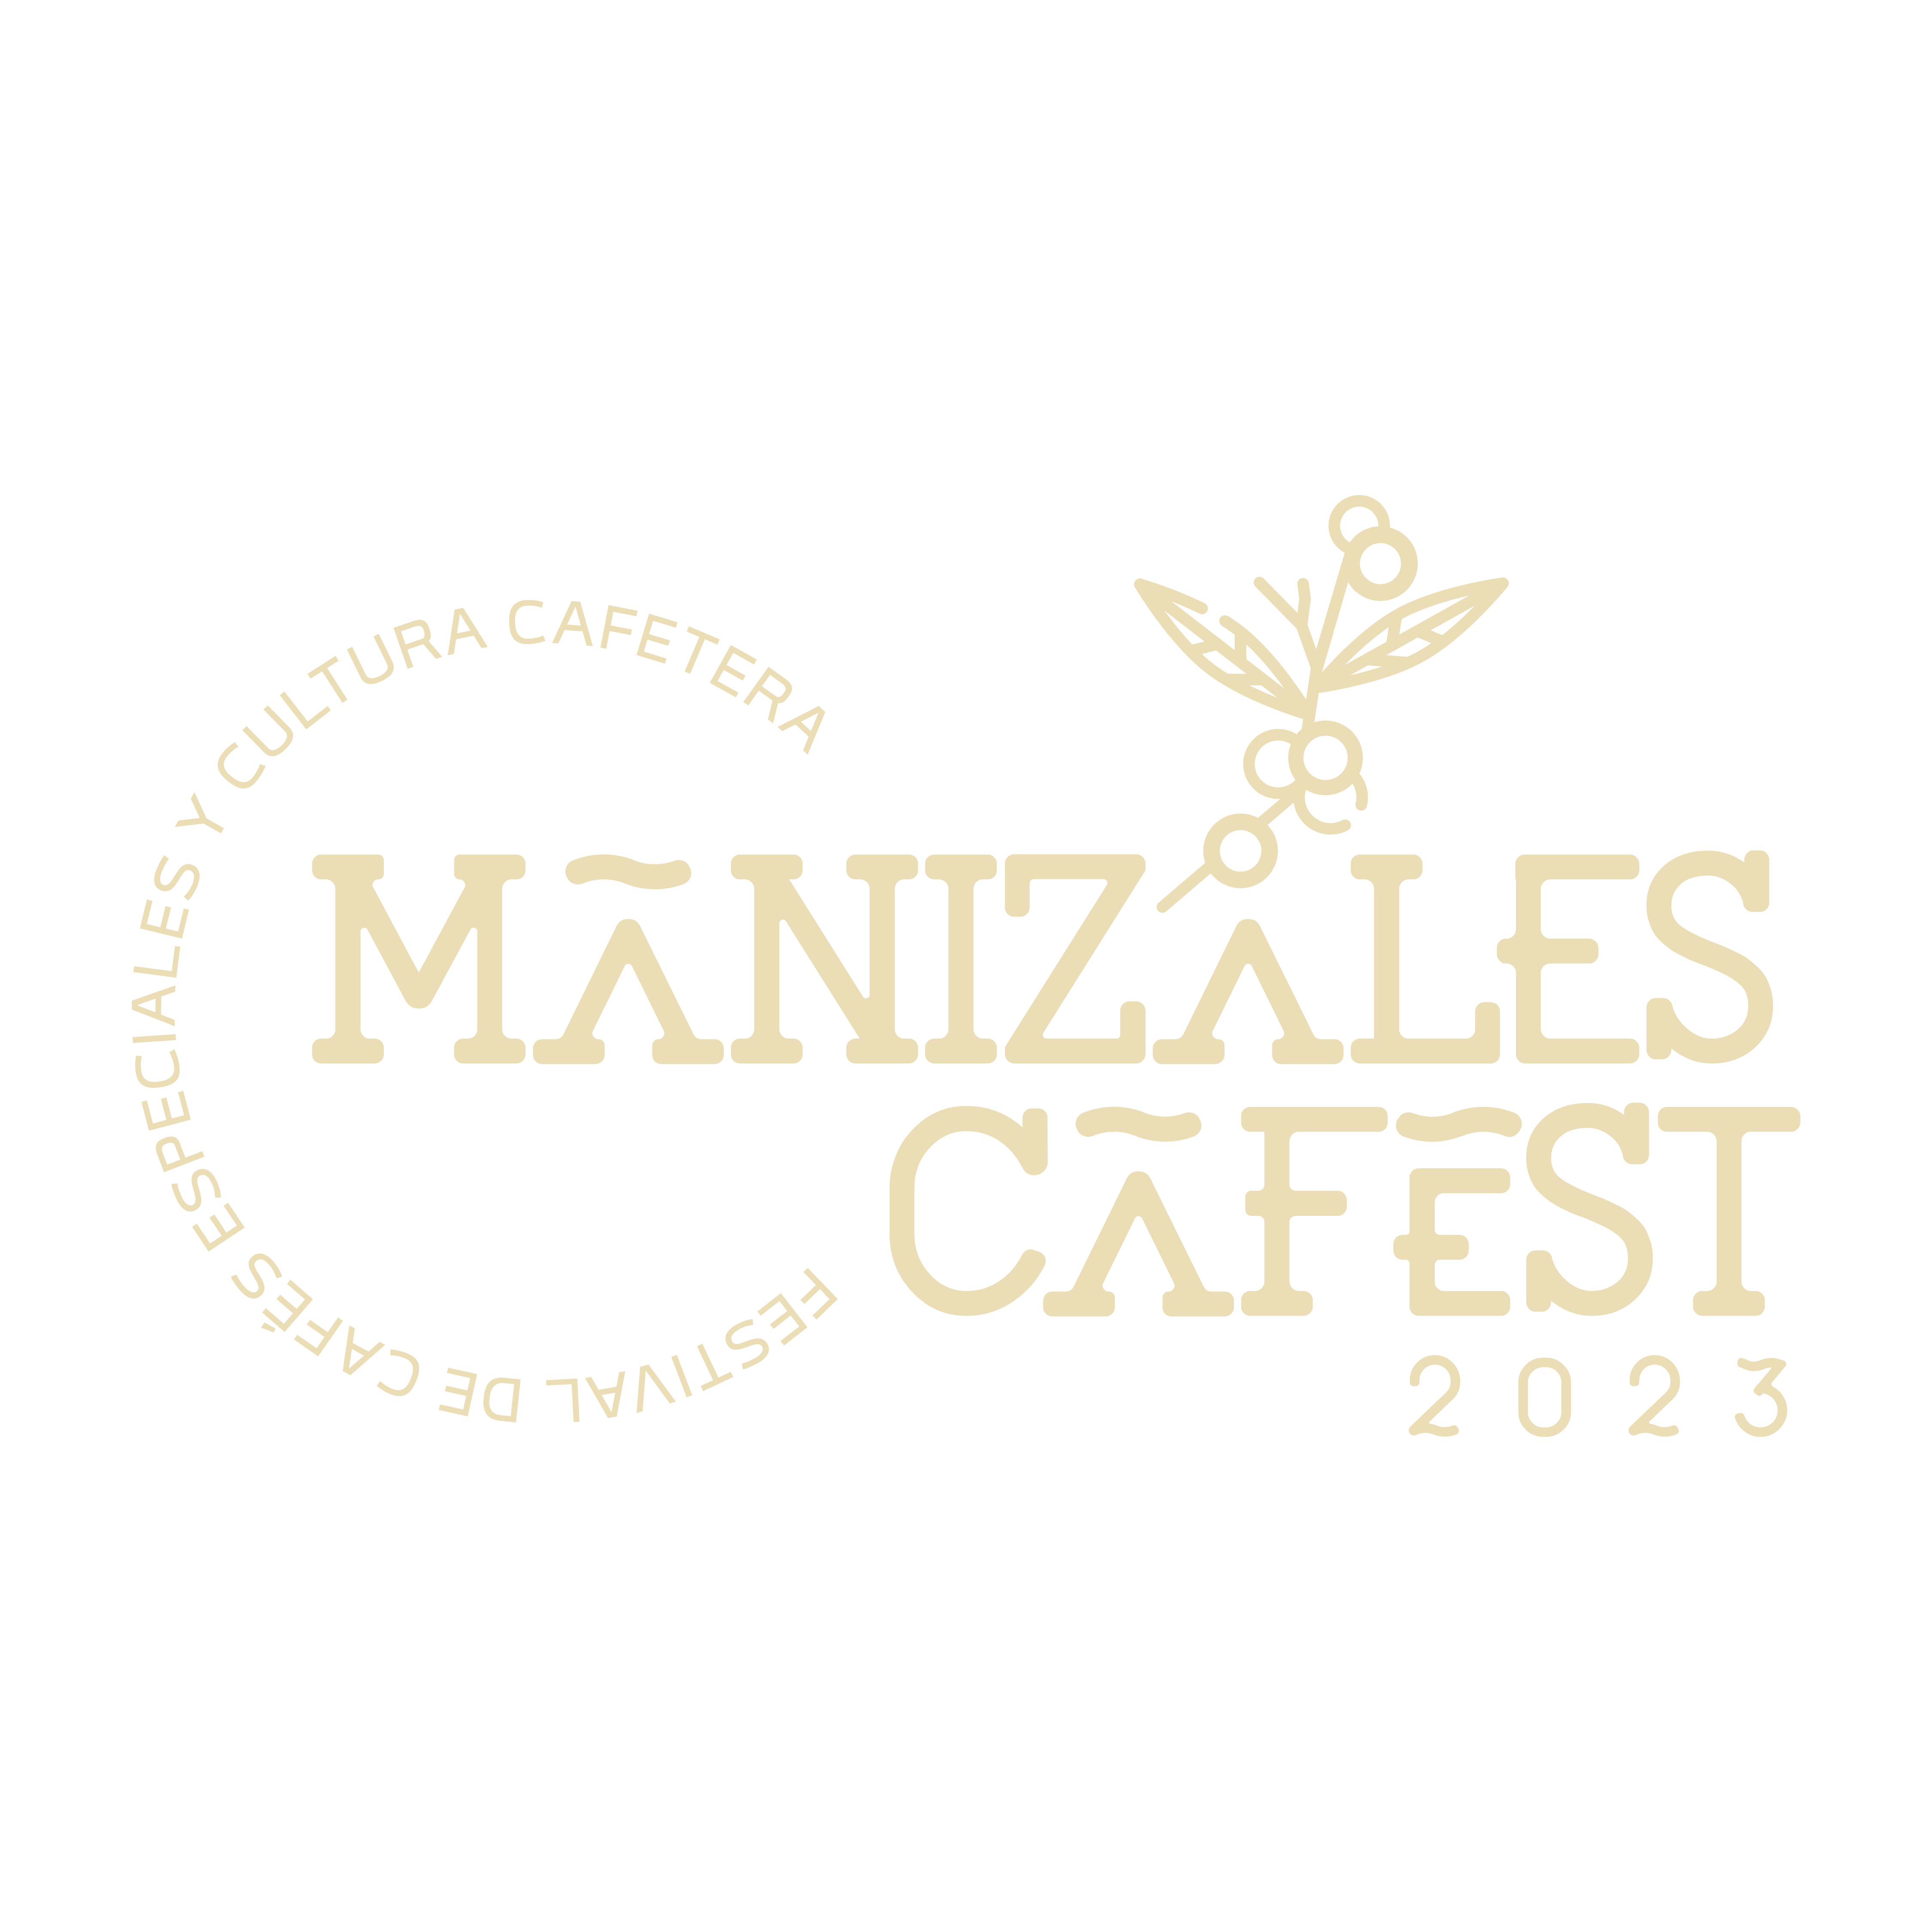 Manizales Cafest